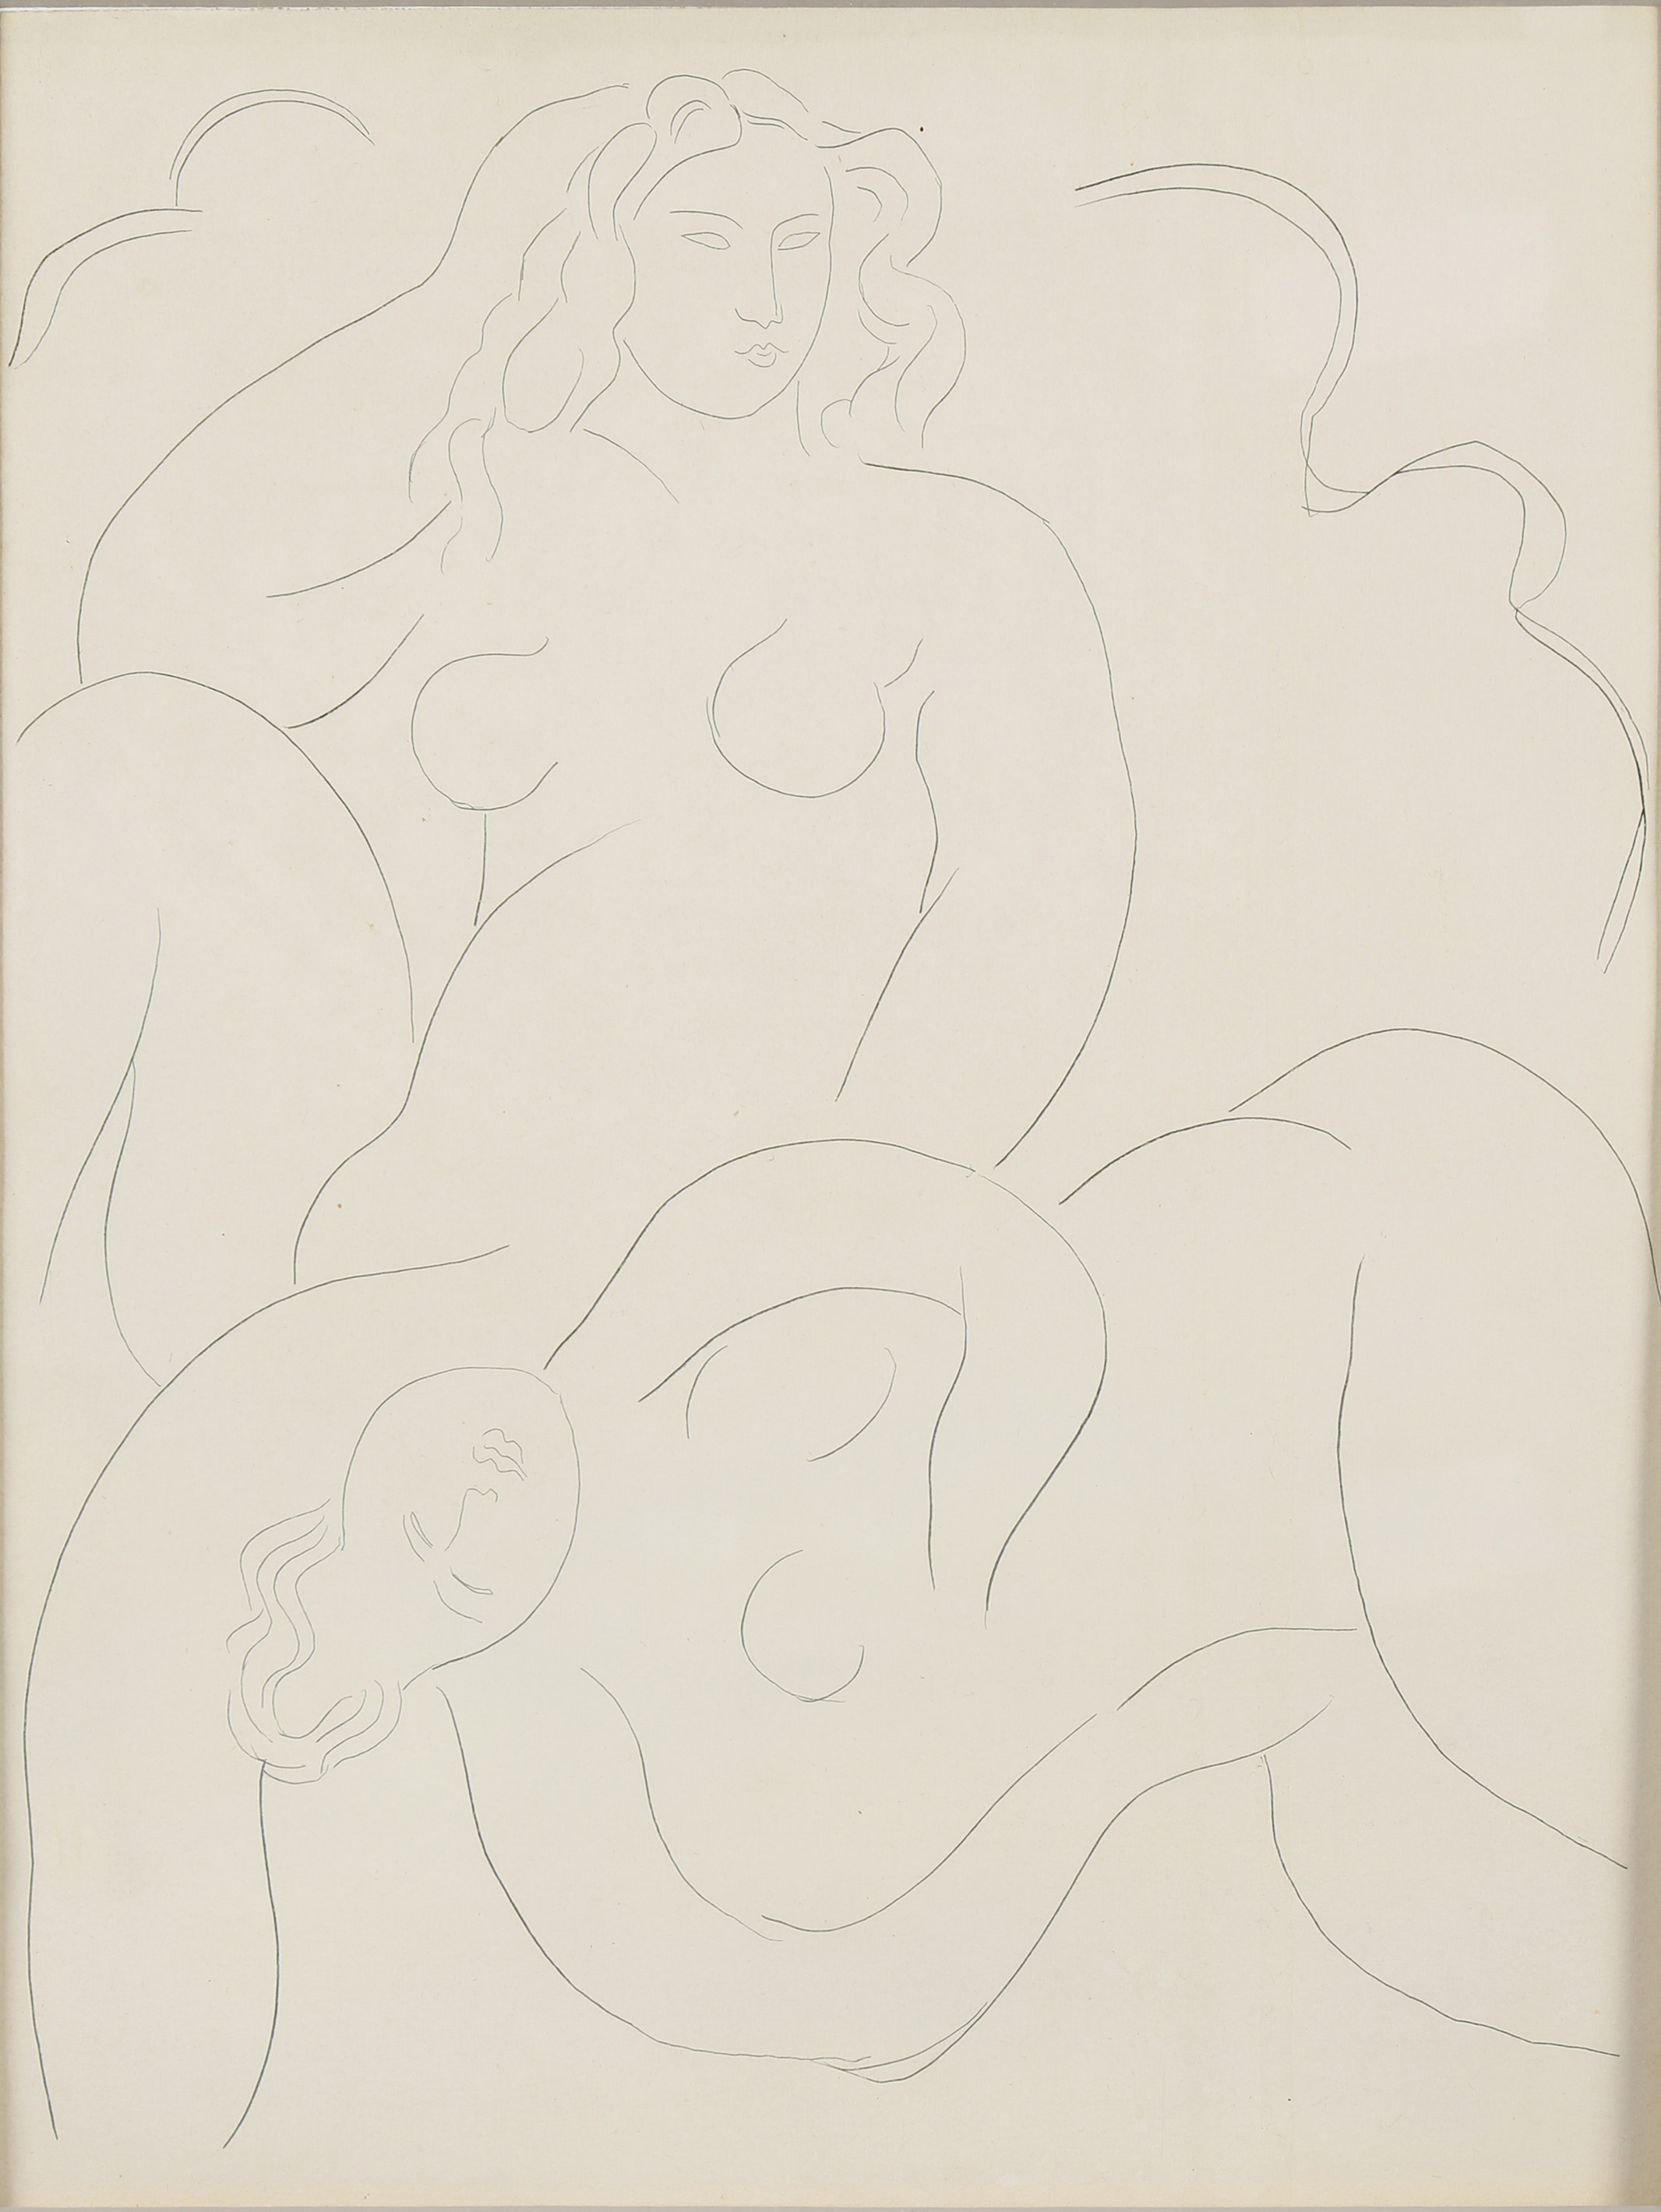 PRINT HENRI MATISSE Henri Matisse 3a4184